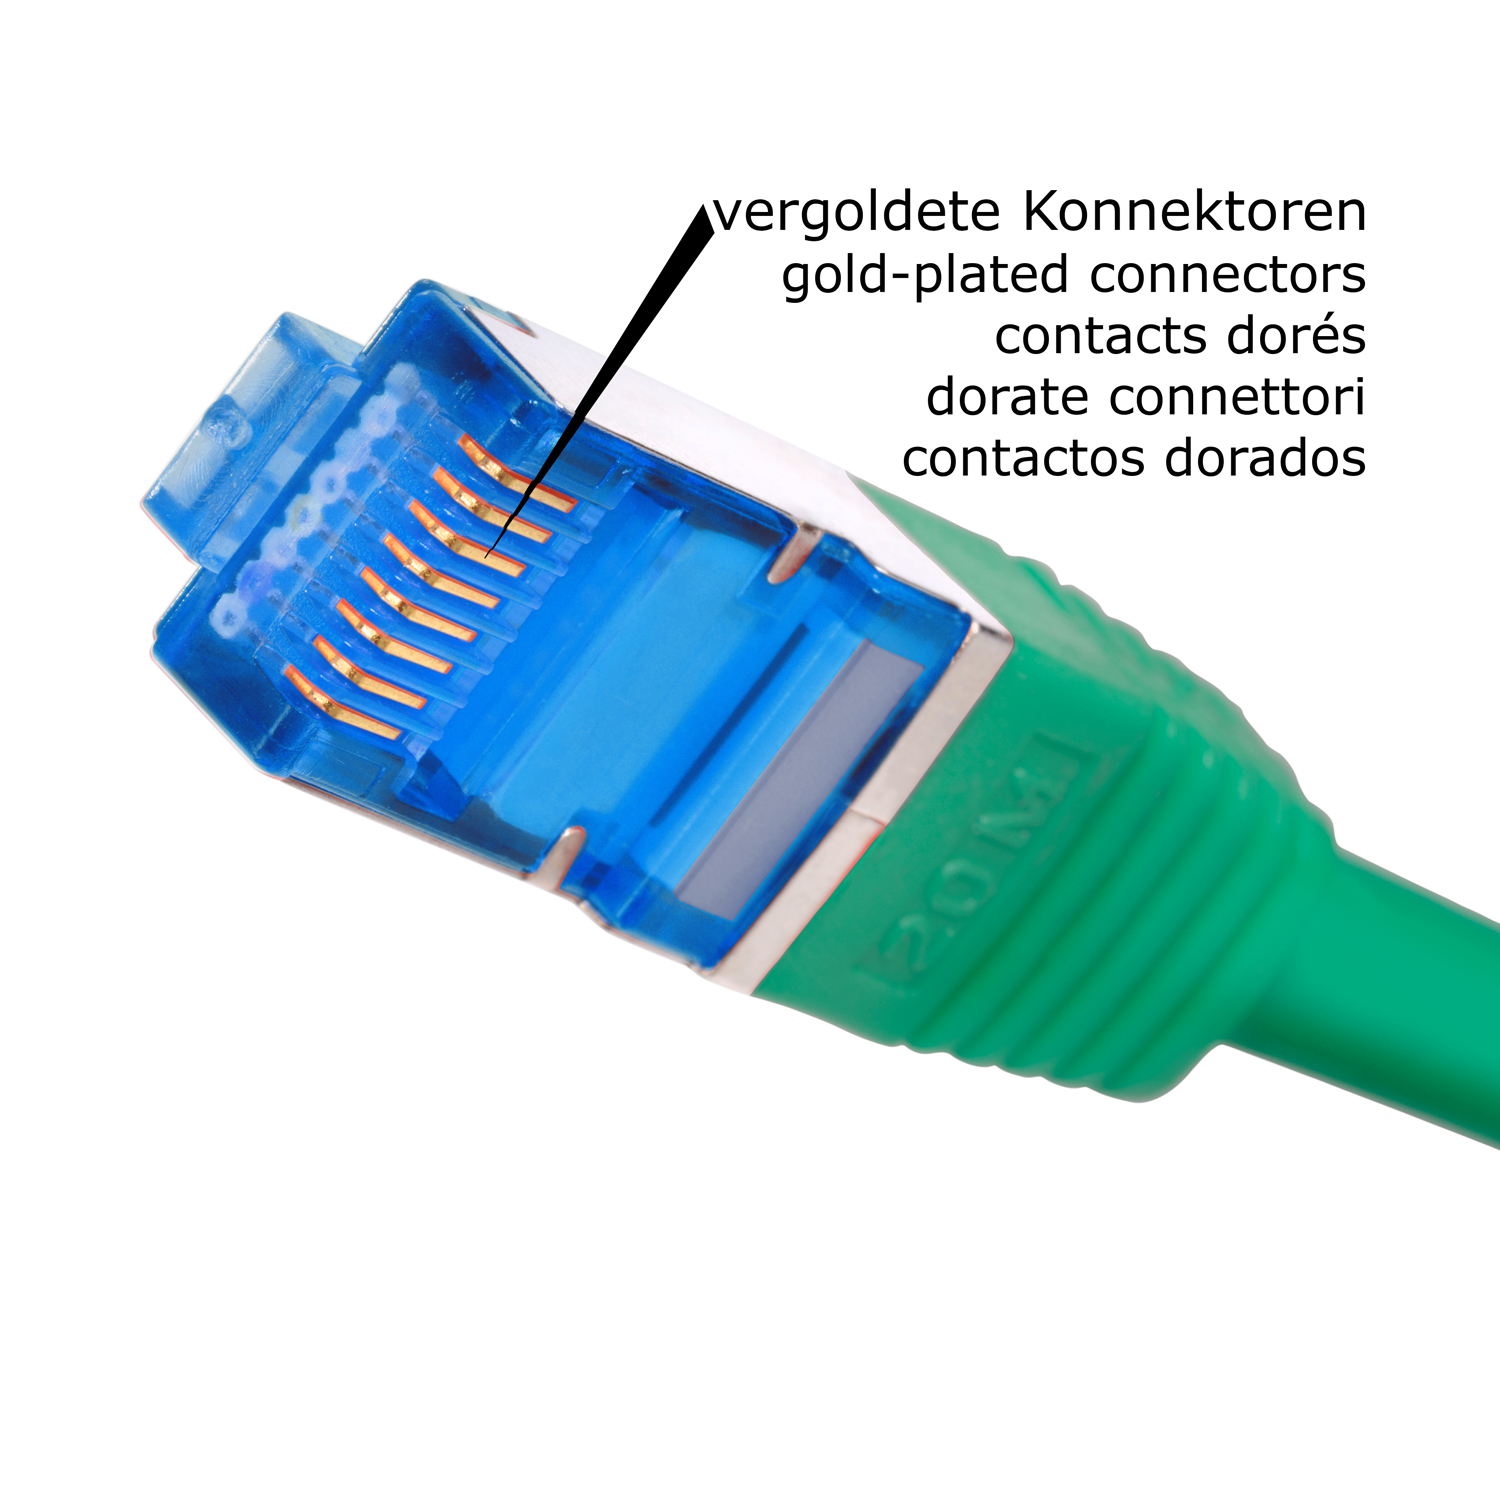 TPFNET 5er / m grün, S/FTP 2 2m 10GBit, Pack Patchkabel Netzwerkkabel Netzwerkkabel